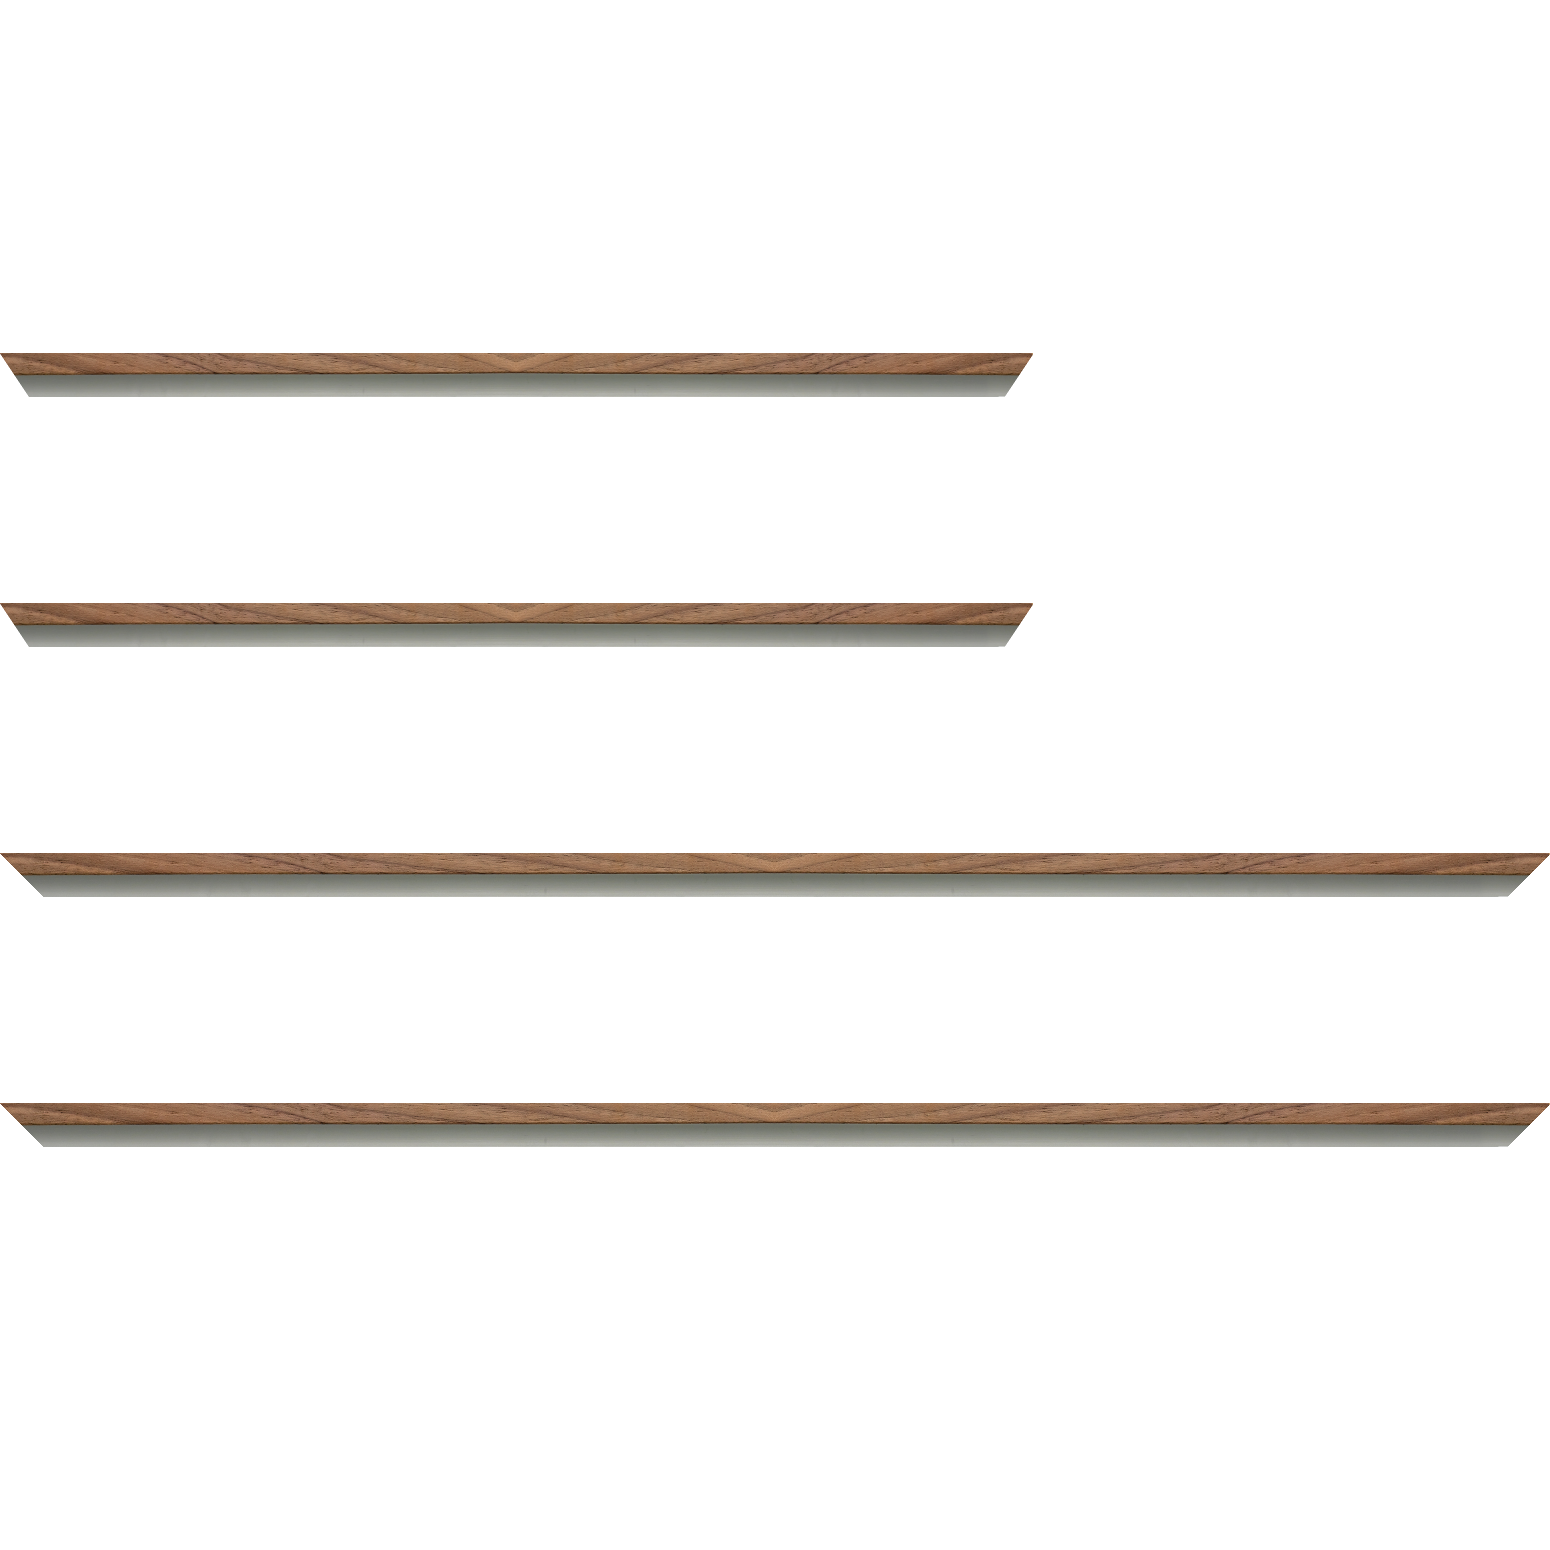 Baguette aluminium profil plat largeur 8mm, placage véritable noyer ,(le sujet qui sera glissé dans le cadre sera en retrait de 6mm de la face du cadre assurant un effet très contemporain) mise en place du sujet rapide et simple: assemblage du cadre par double équerre à vis (livré avec le système d'accrochage qui se glisse dans le profilé) encadrement non assemblé,  livré avec son sachet d'accessoires - 70x100